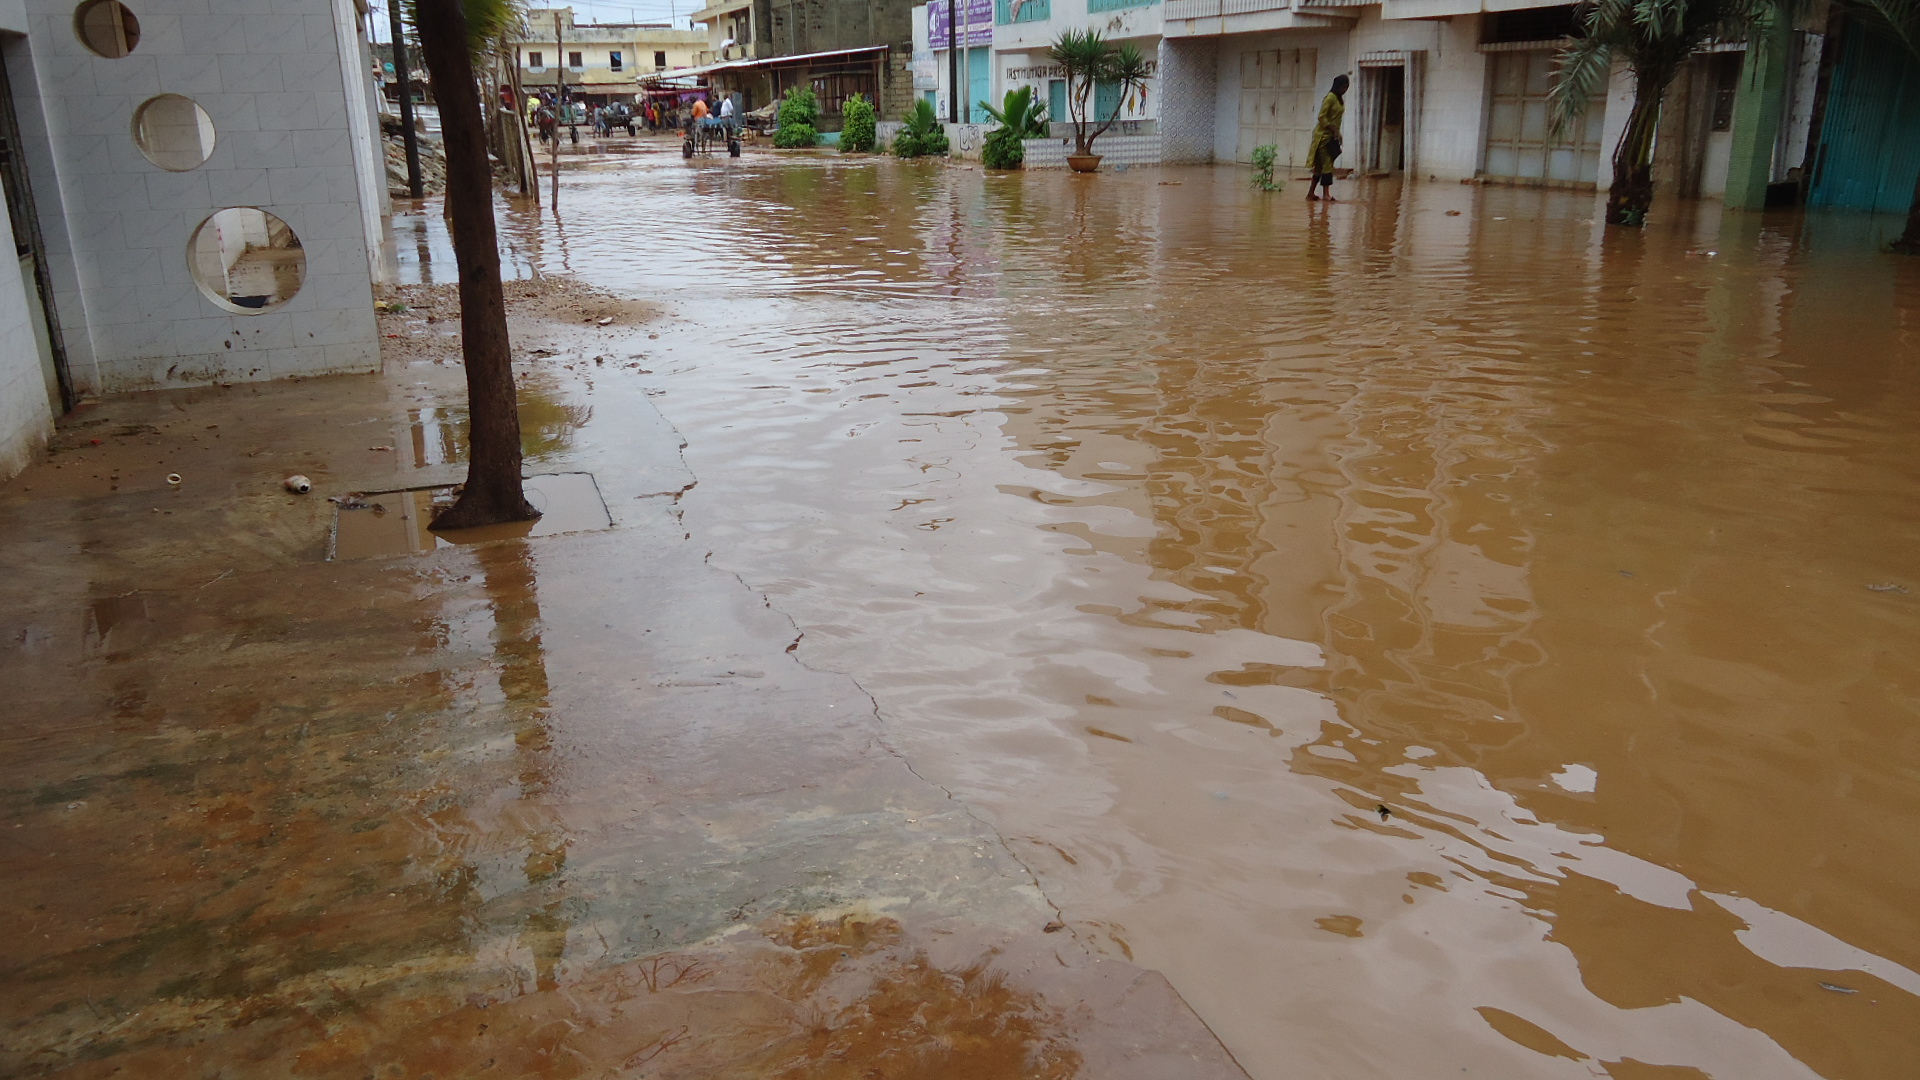 Inondations: La "citadelle" des Parcelles est tombée sous les eaux